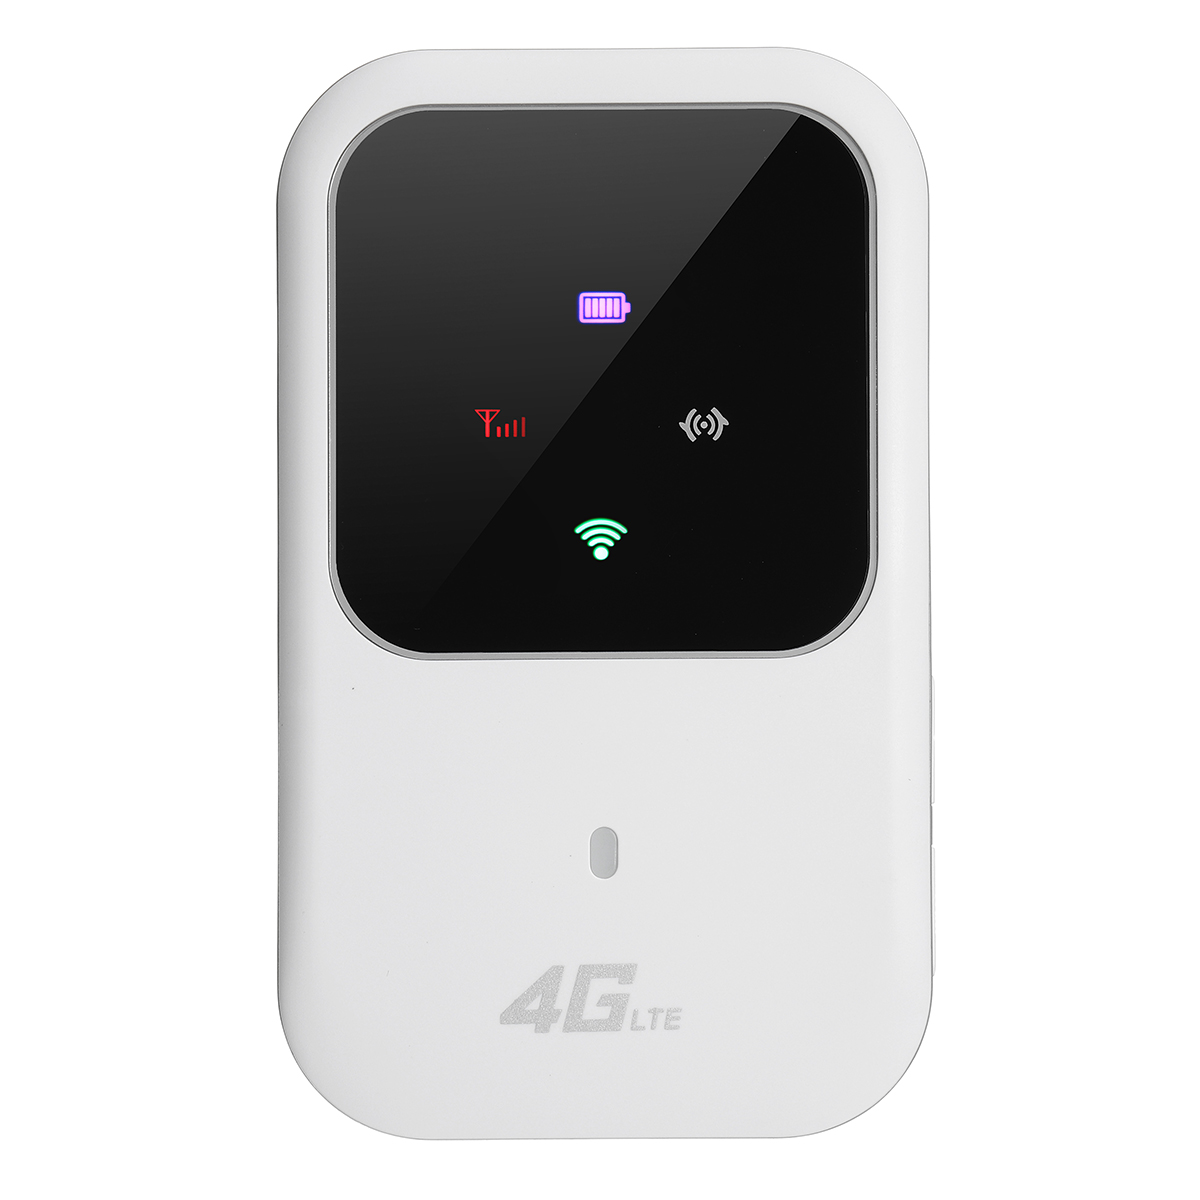 Tempsa Routeur Modem Wifi Sans Fil Portable Hotspot Lte 4g 3g Umts 150